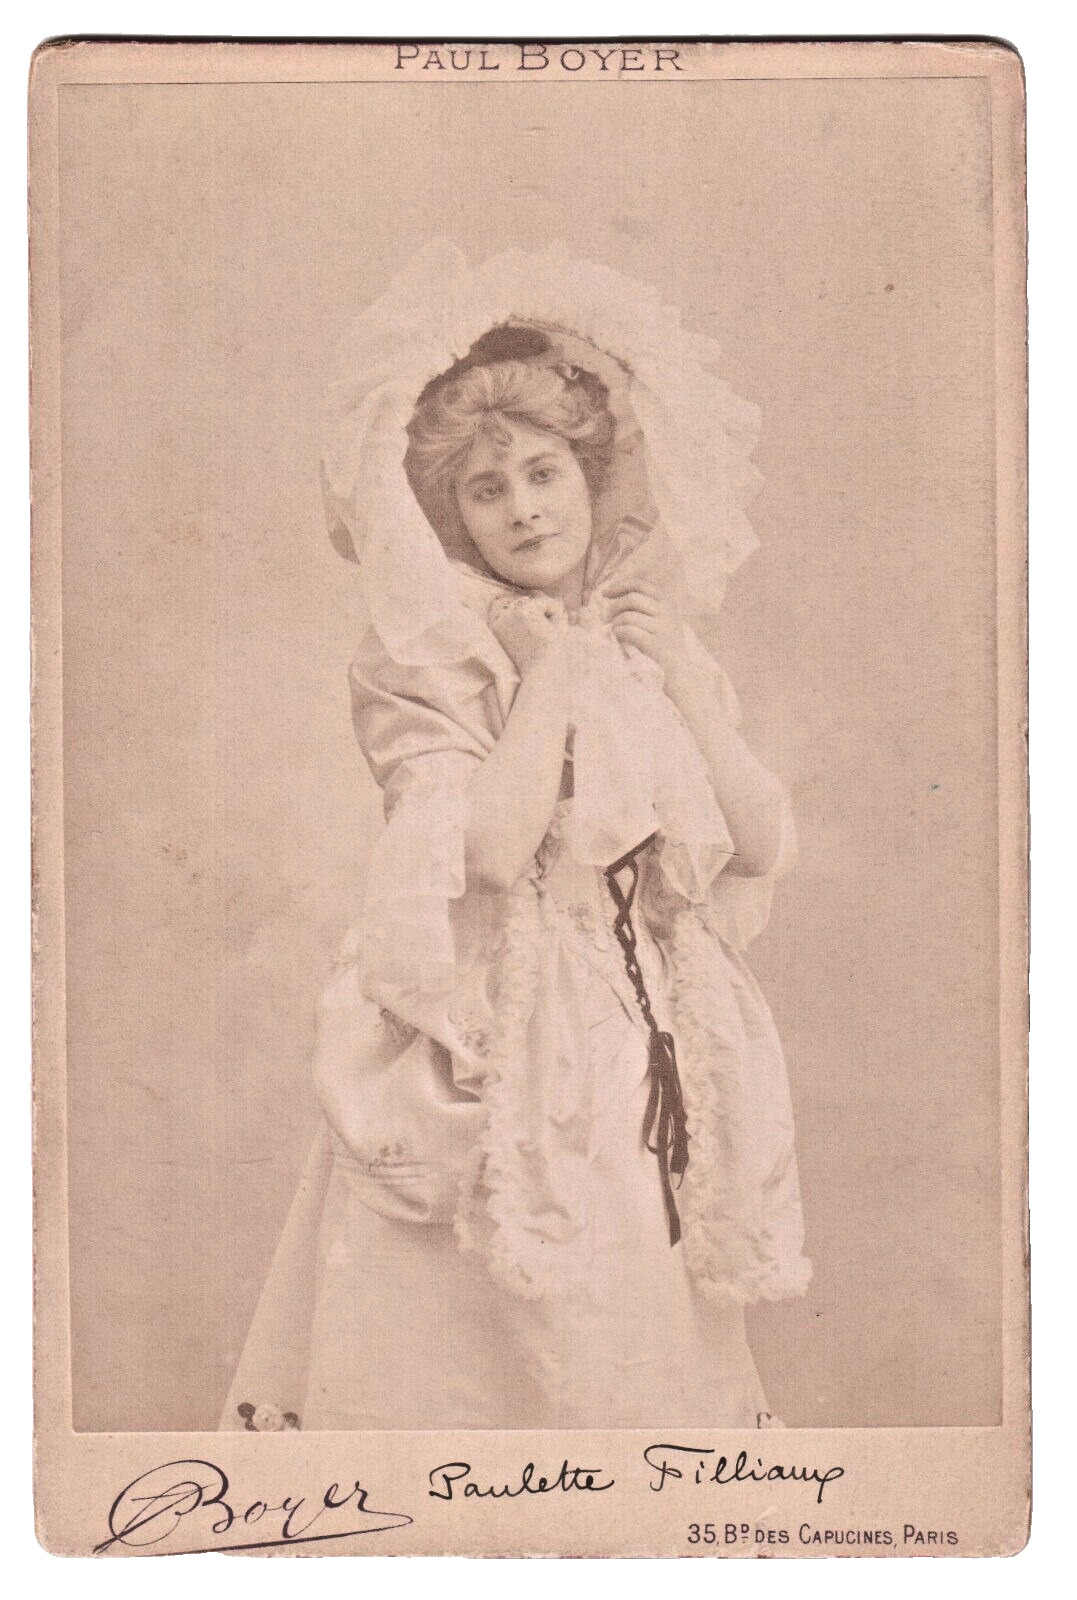 Paulette Filliaux. Vaudeville actress. Actress. Photo Paul Boyer Paris 1890